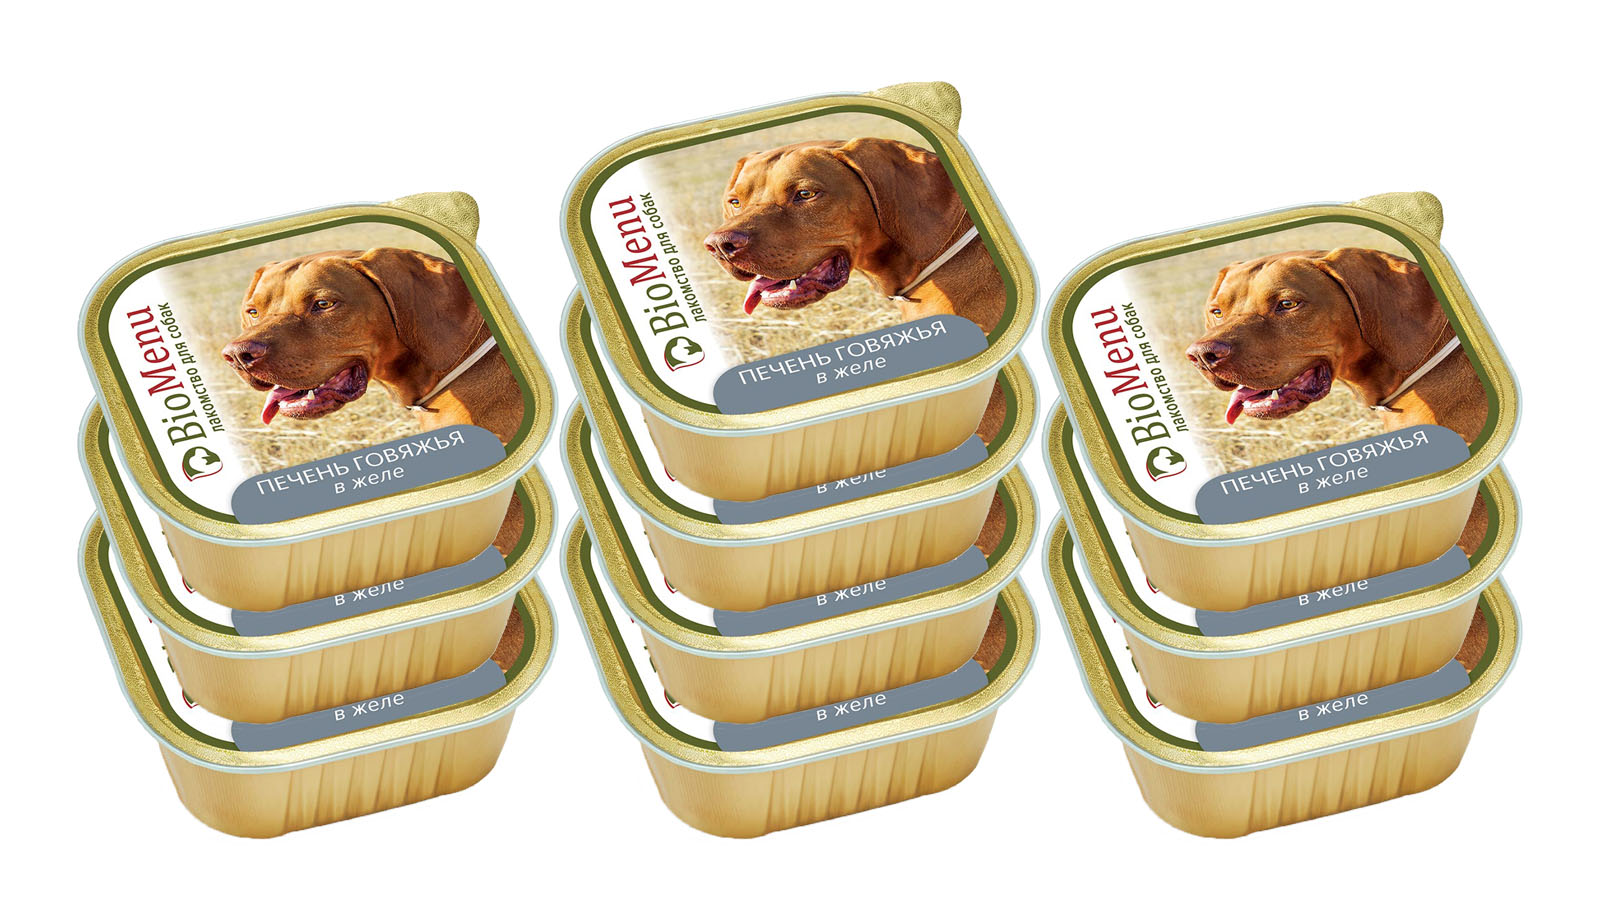 Консервы для собак BioMenu Печень говяжья в желе, 10 шт по 300 г